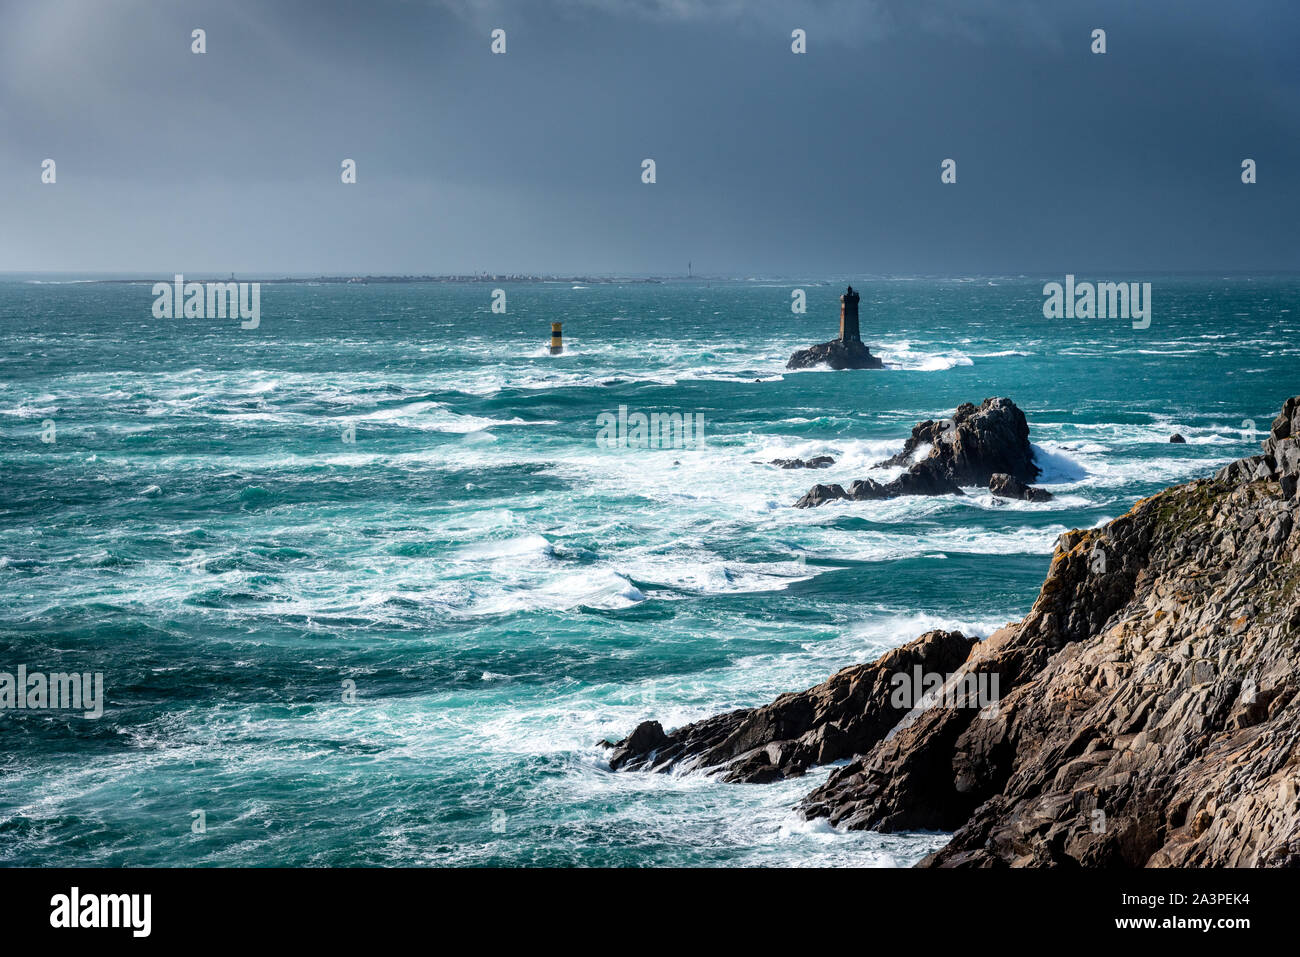 Die Pointe du Raz, Bretagne. In diesem felsigen Kap Gesichter der Insel Sein. Die riesigen Wellen des Atlantiks sind auf den Felsen zerschmettert. Stockfoto